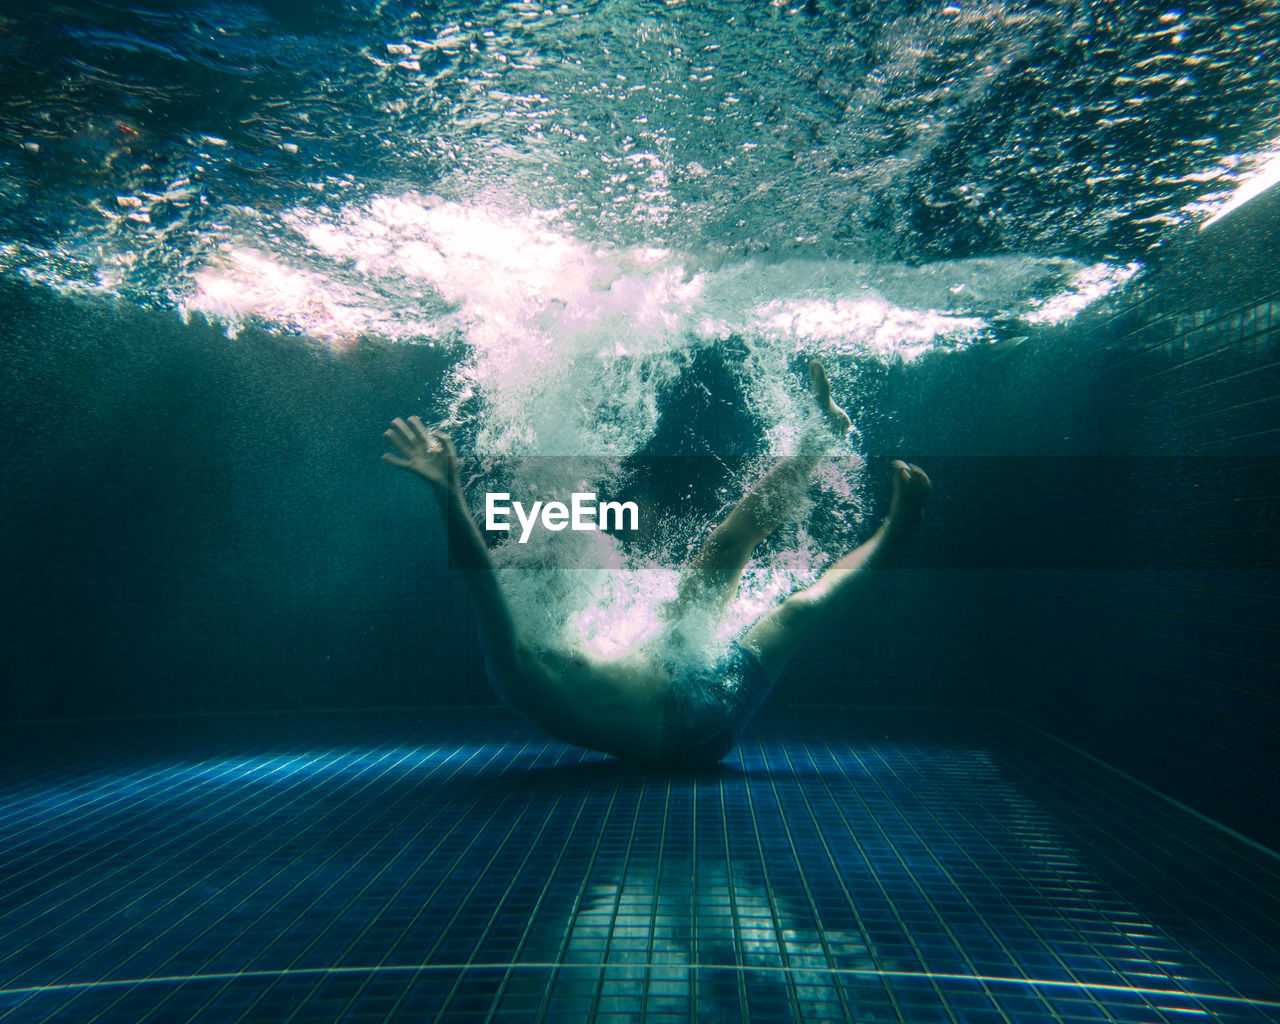 Man falling underwater in pool